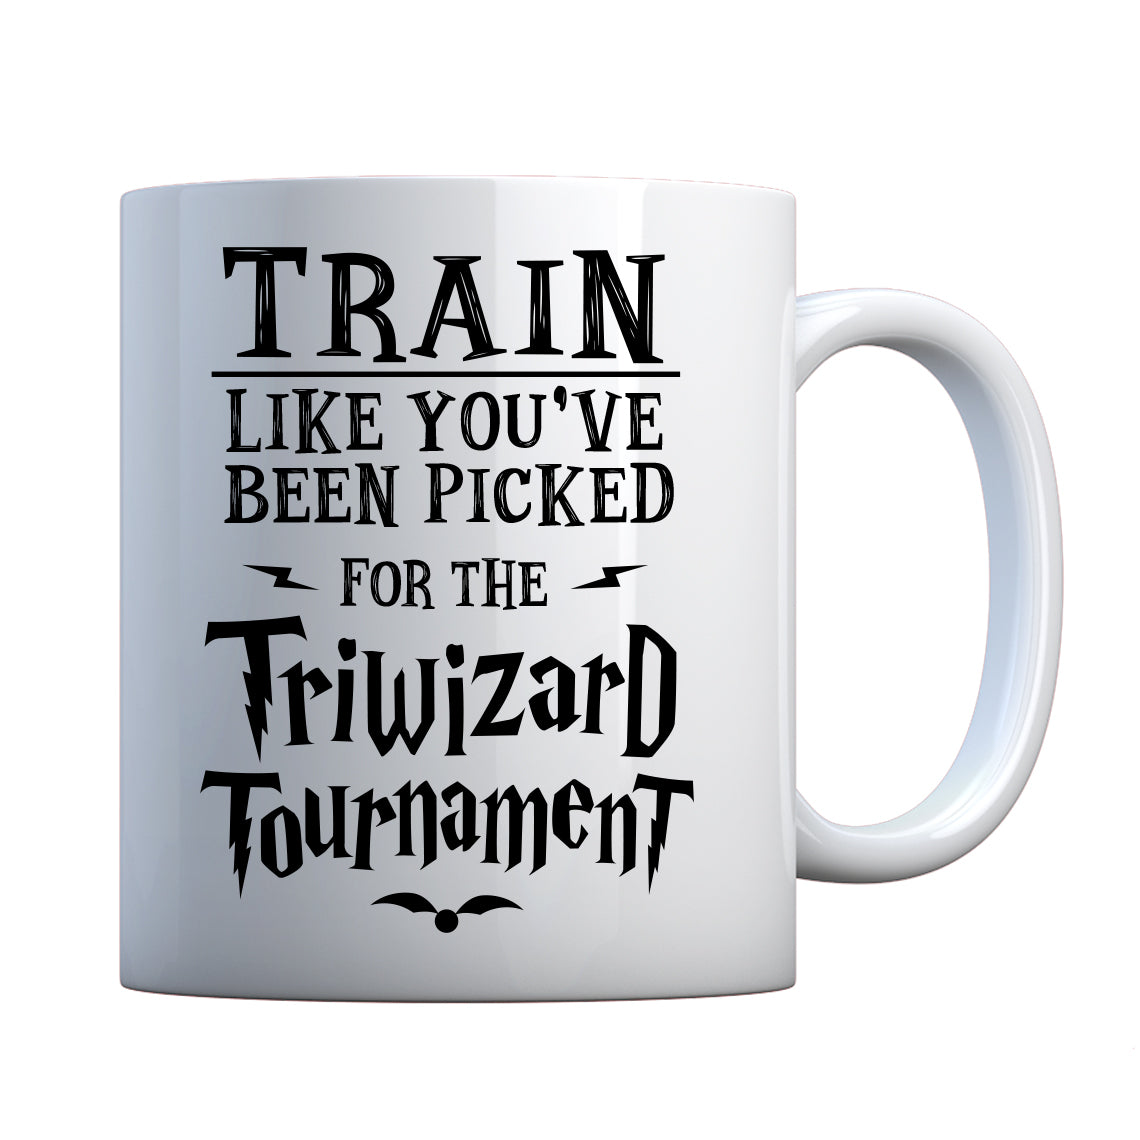 Mug Train for Triwizard Tournament Ceramic Gift Mug